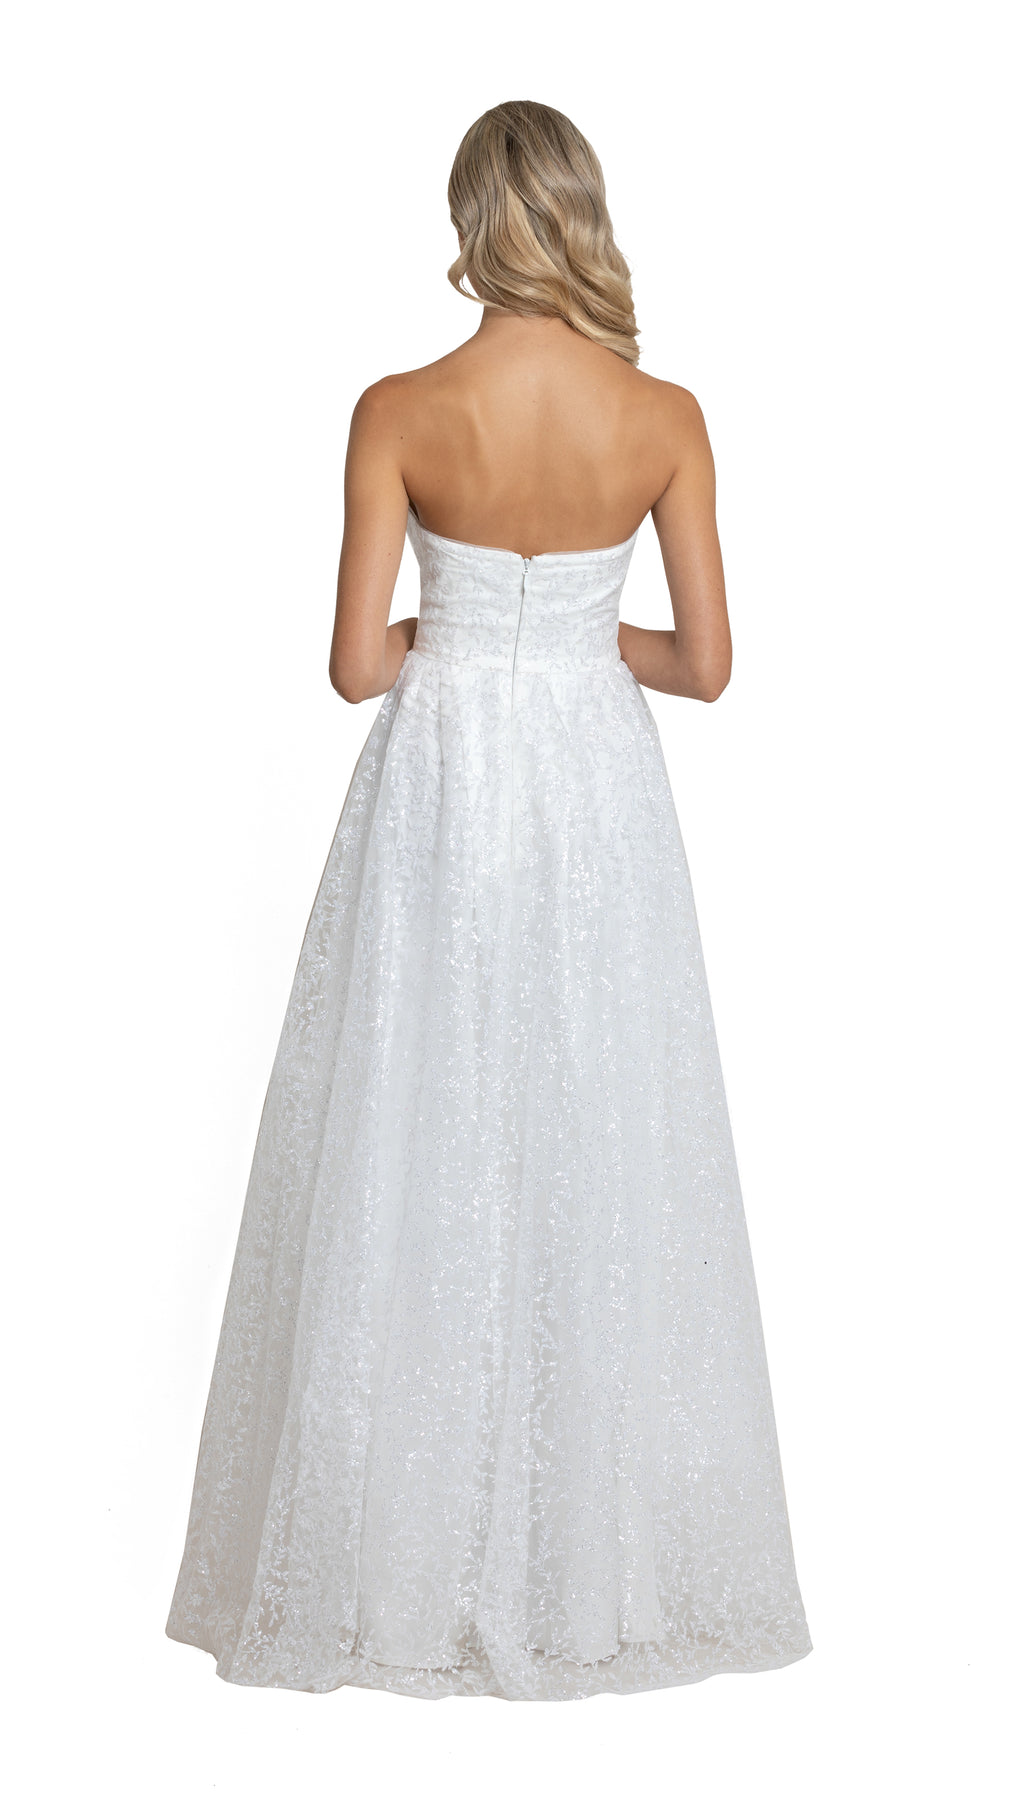 Carla Sweetheart Glitter Gown in white back